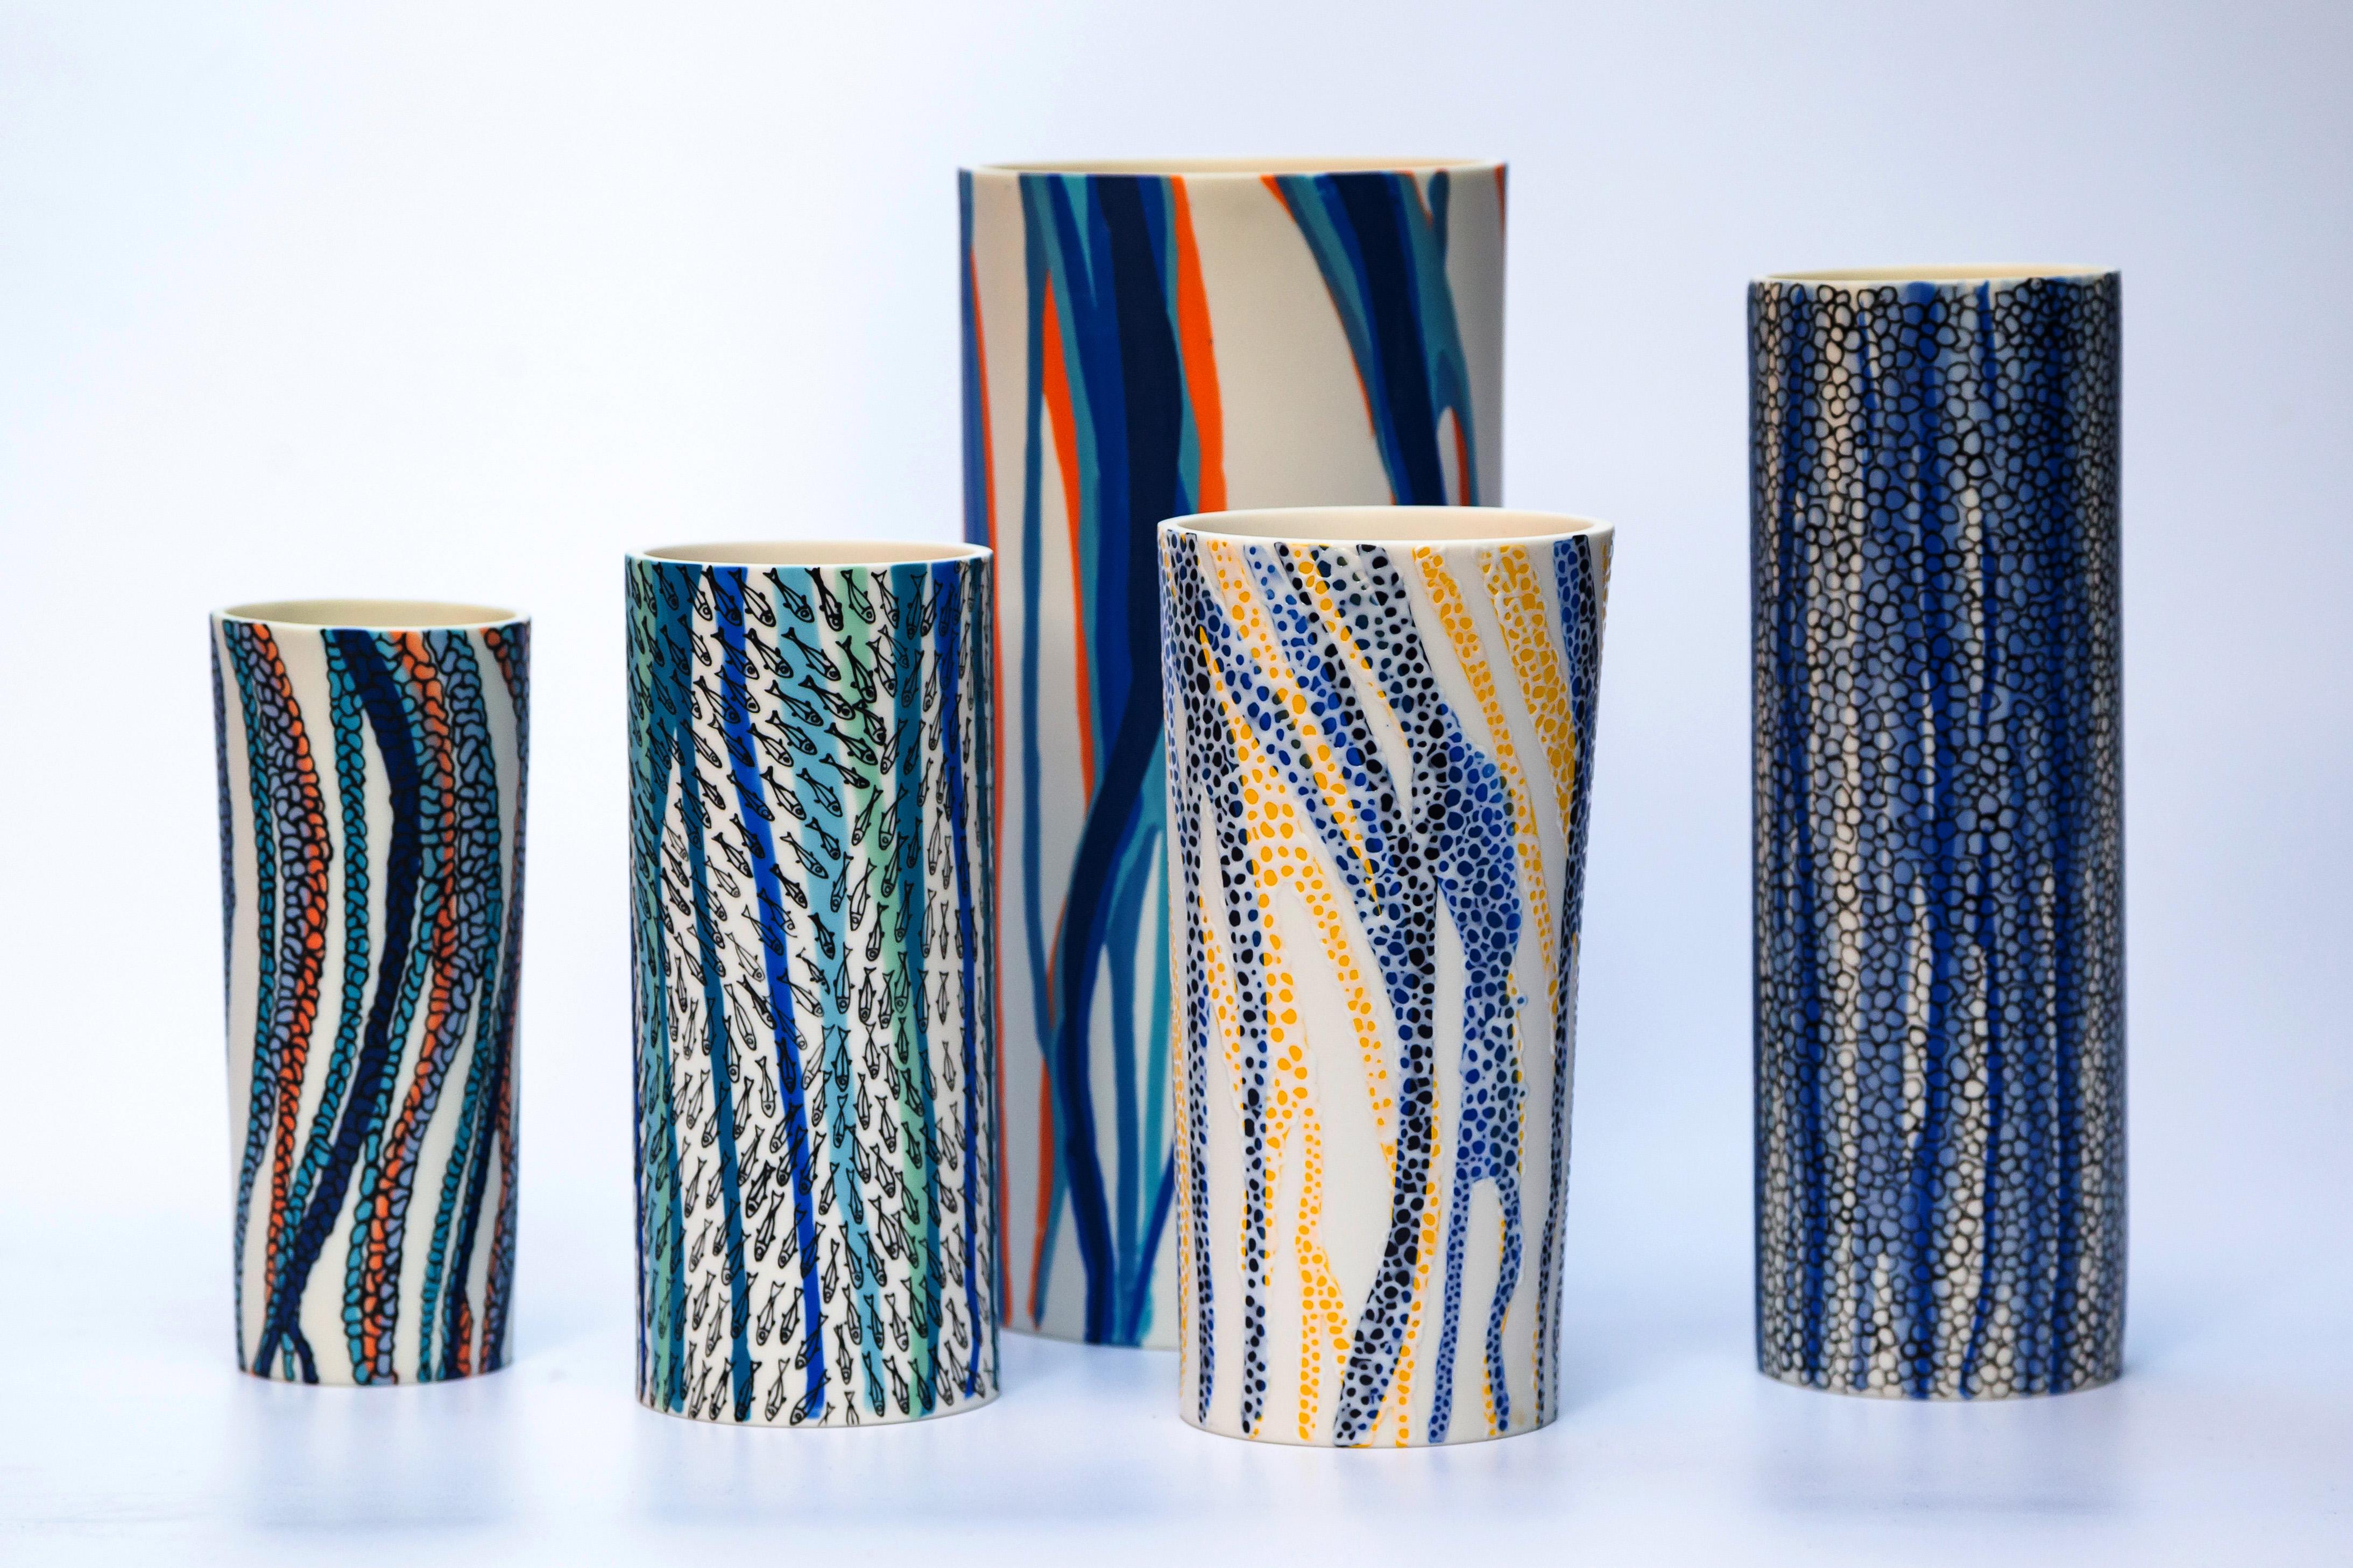 Shoal of Fish Porcelain Vase Unique Parianware Contemporary 21st Century UK 2